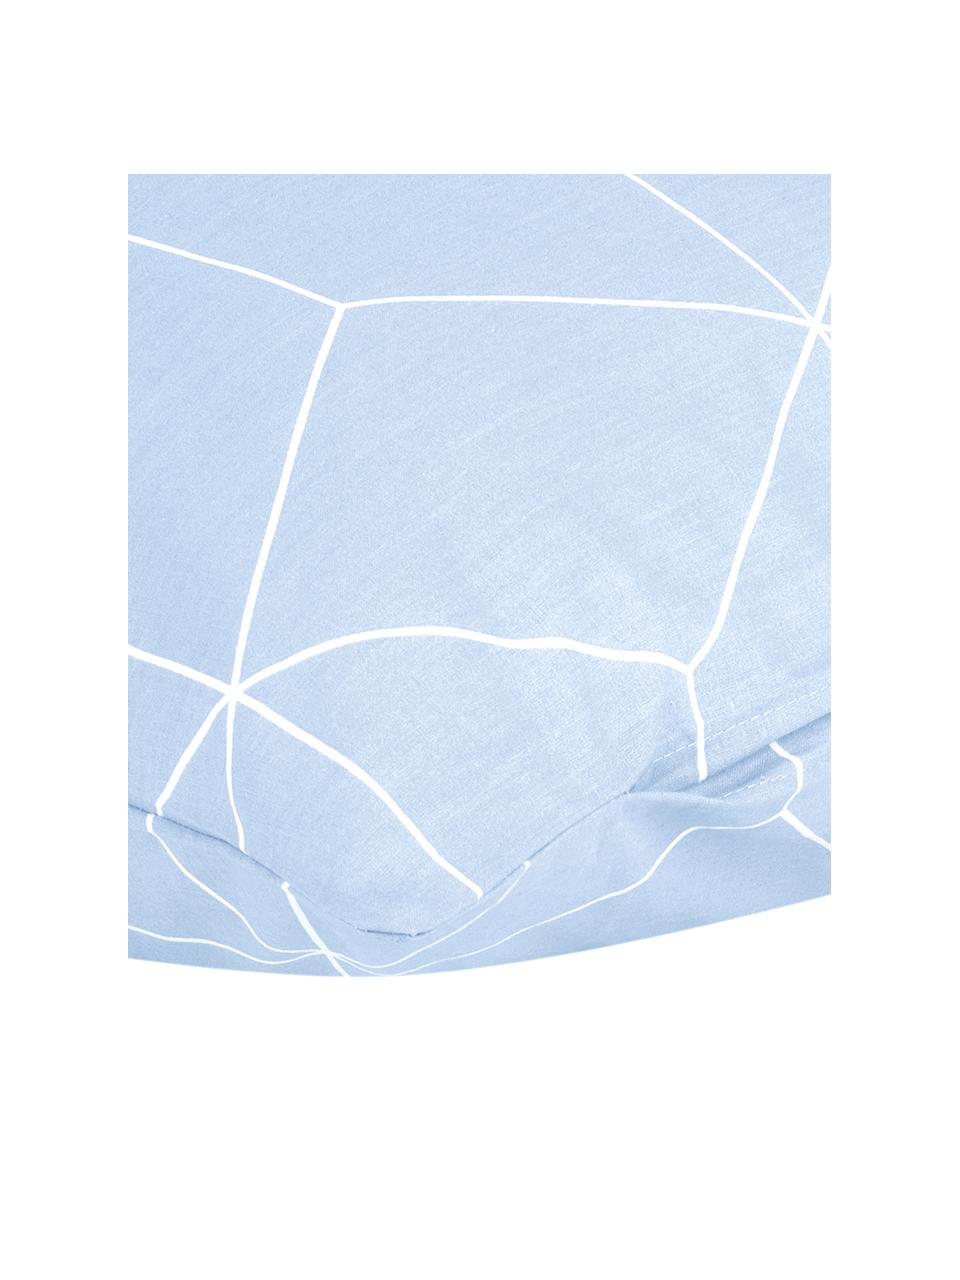 Baumwoll-Kopfkissenbezüge Lynn mit grafischem Muster, 2 Stück, Webart: Renforcé Fadendichte 144 , Hellblau & Cremeweiss, gemustert, B 40 x L 80 cm